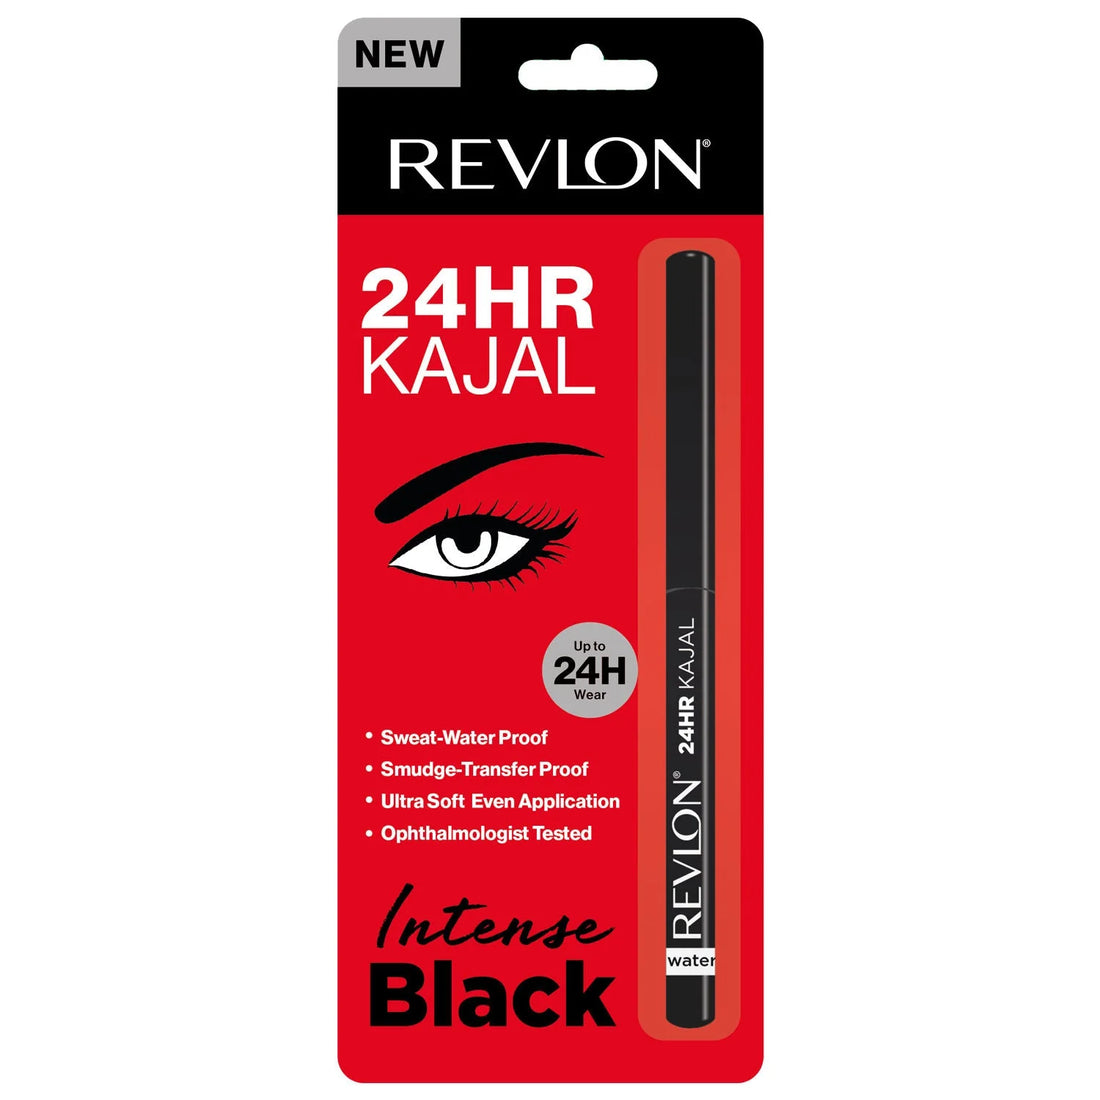 Revlon 24 Hr Kajal - Intense Black